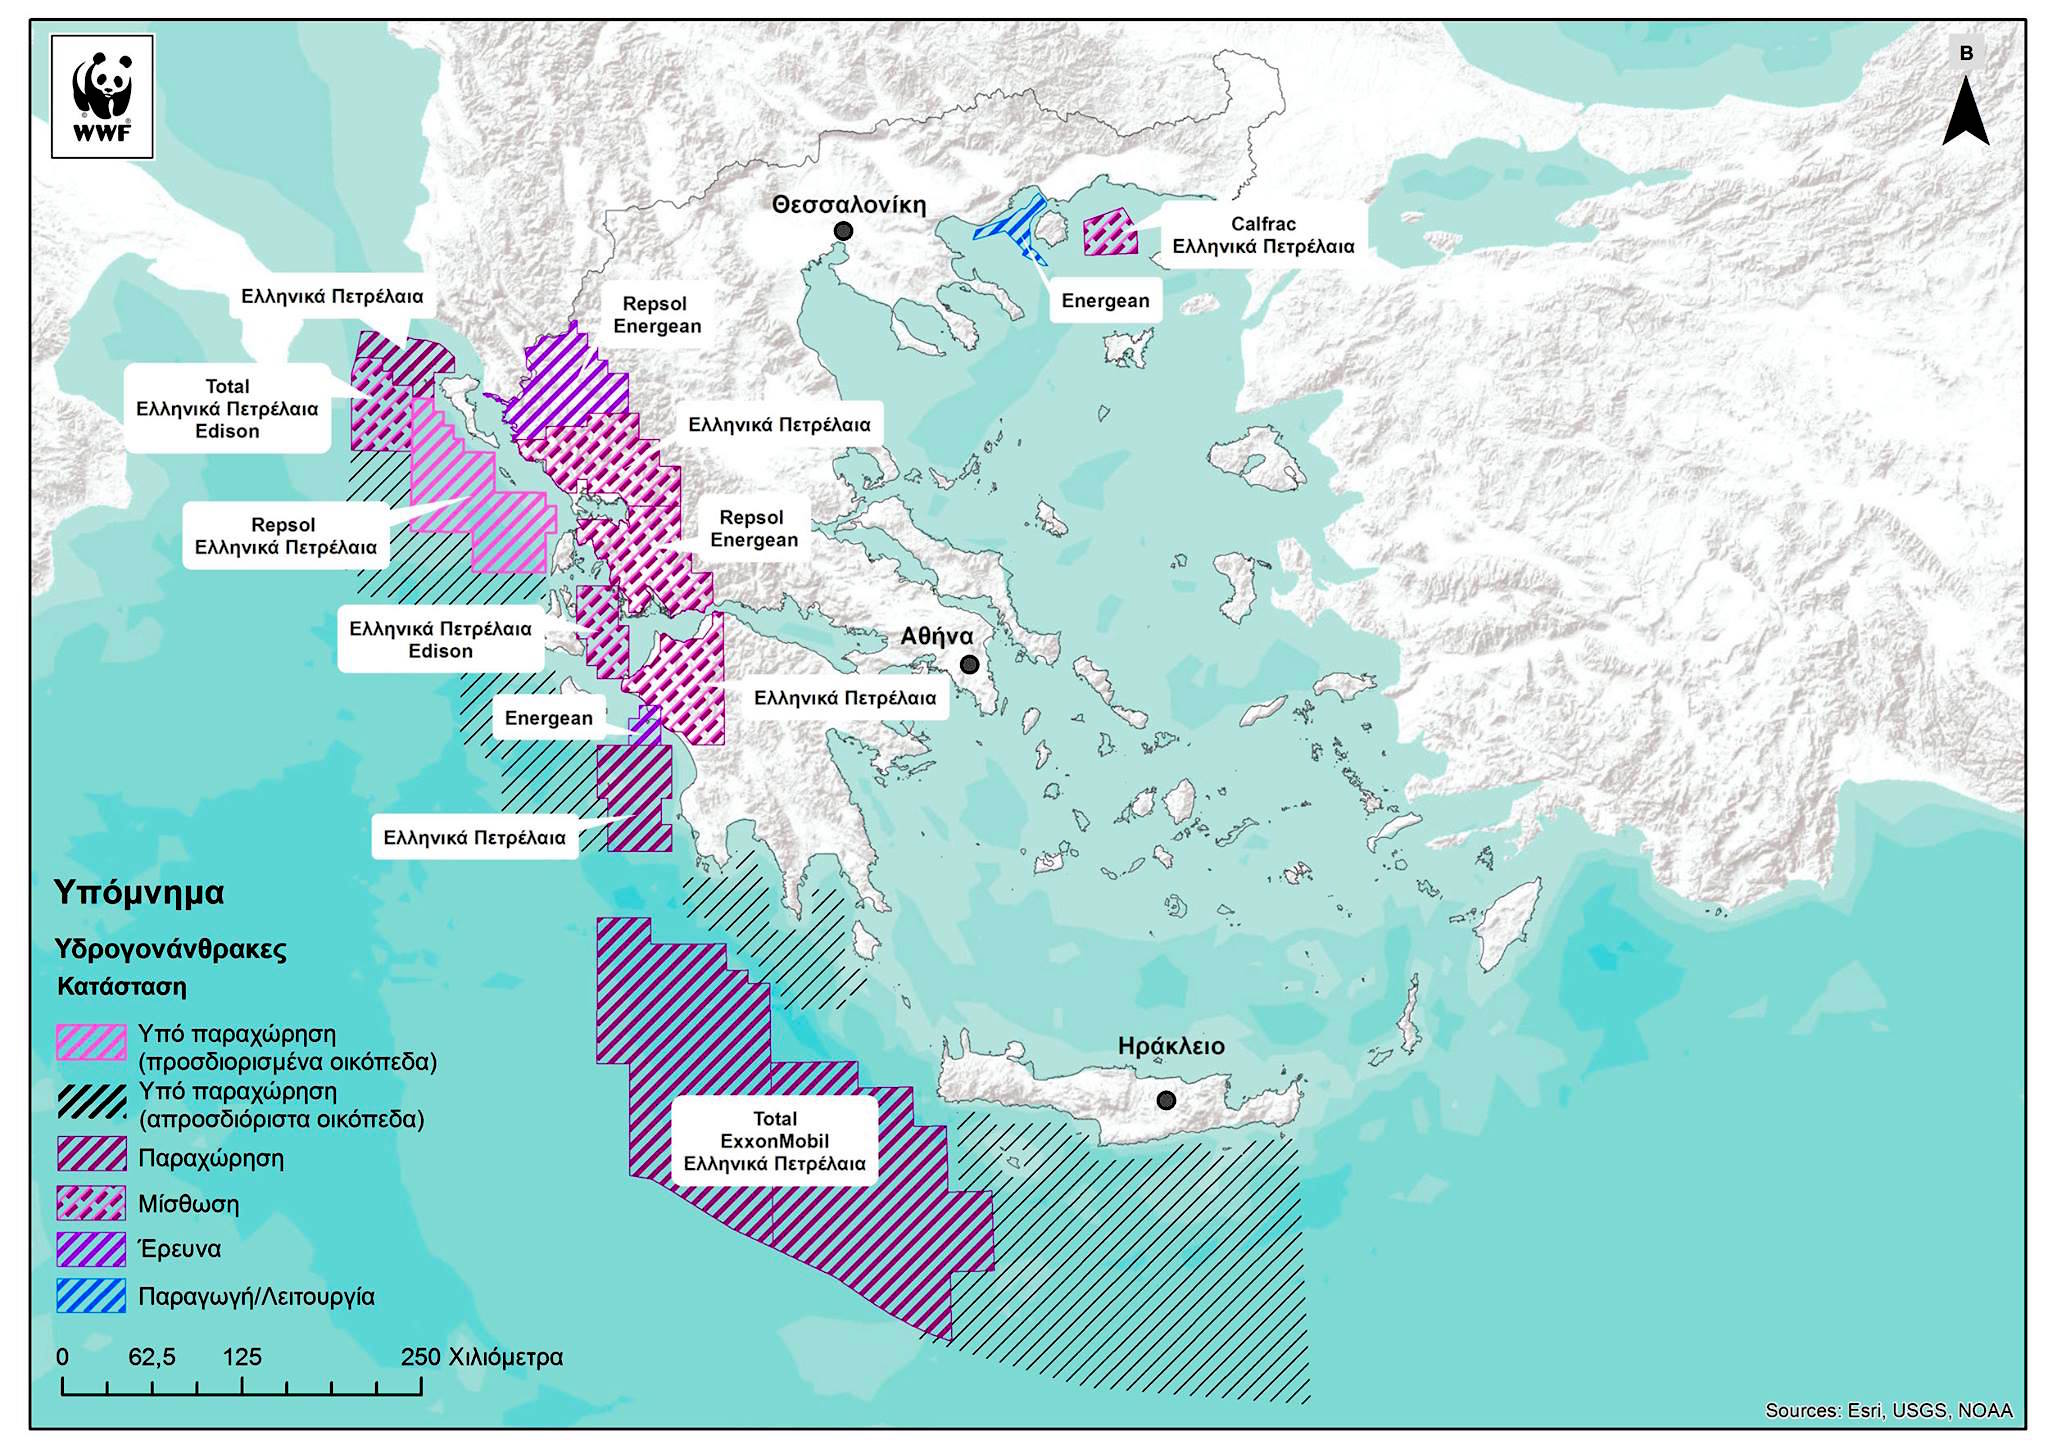 Ποια μέρη είναι “οικόπεδα πετρελαίων”; Η μισή Ελλάδα! #save_Epirus #skouries